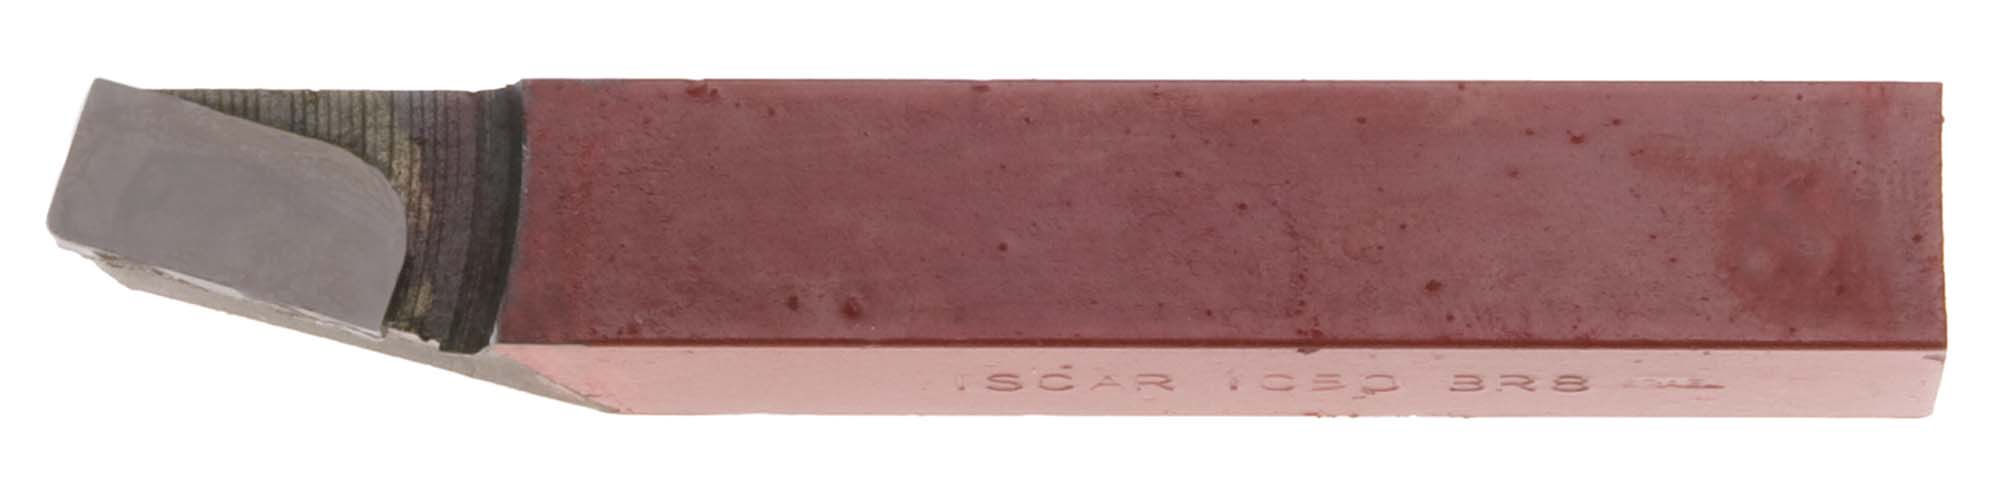 7/16" Square C Iscar Carbide Toolbit Grade IC50/C5